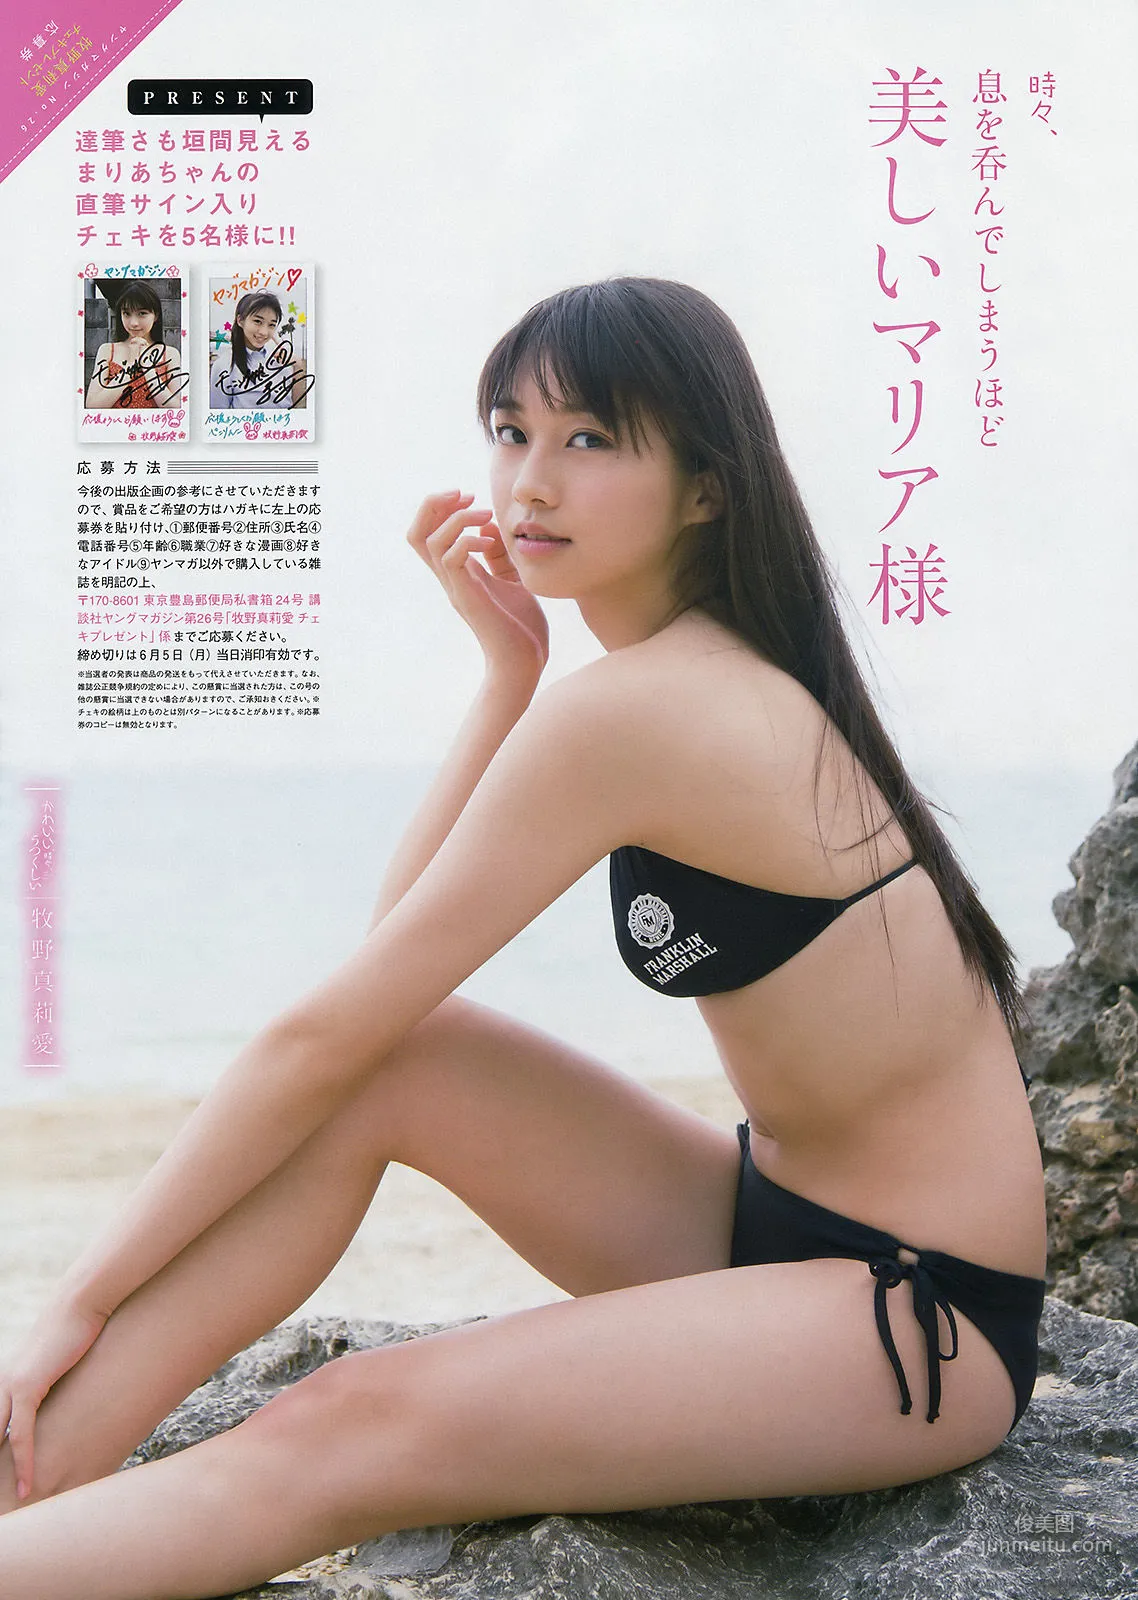 [Young Magazine] 牧野真莉愛 長沢菜々香 2017年No.26 写真杂志6